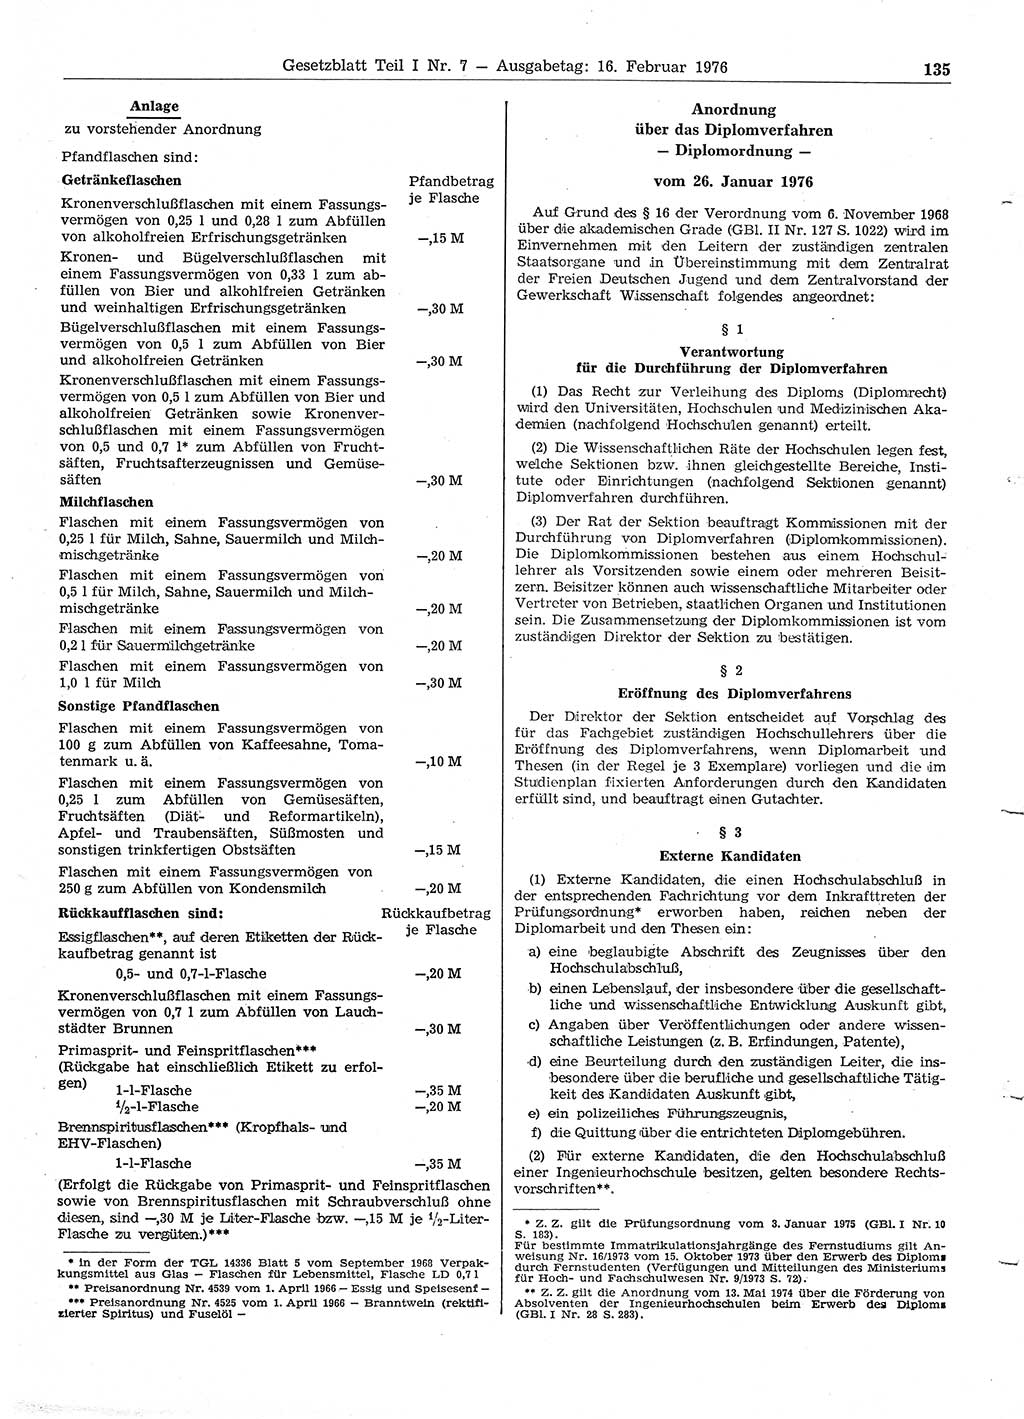 Gesetzblatt (GBl.) der Deutschen Demokratischen Republik (DDR) Teil Ⅰ 1976, Seite 135 (GBl. DDR Ⅰ 1976, S. 135)